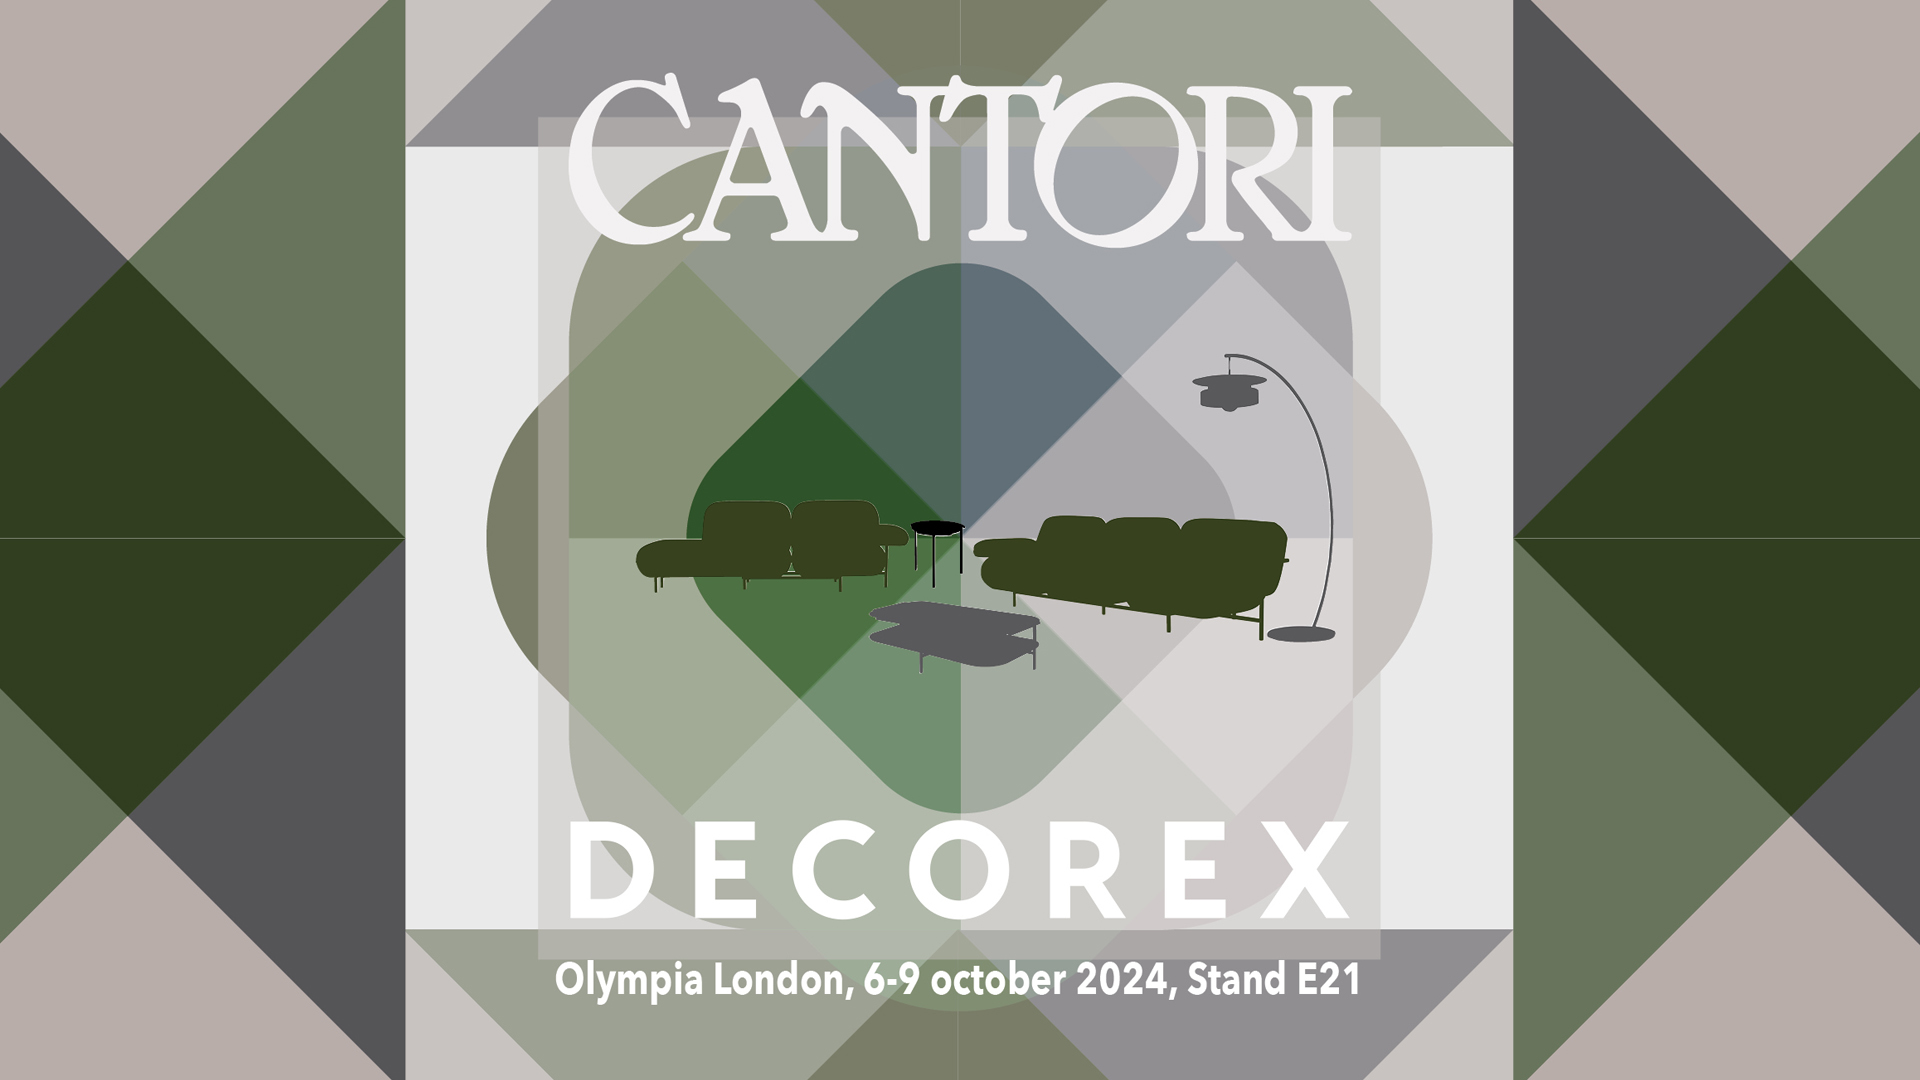 Cantori alla fiera Decorex 2024 - Cantori